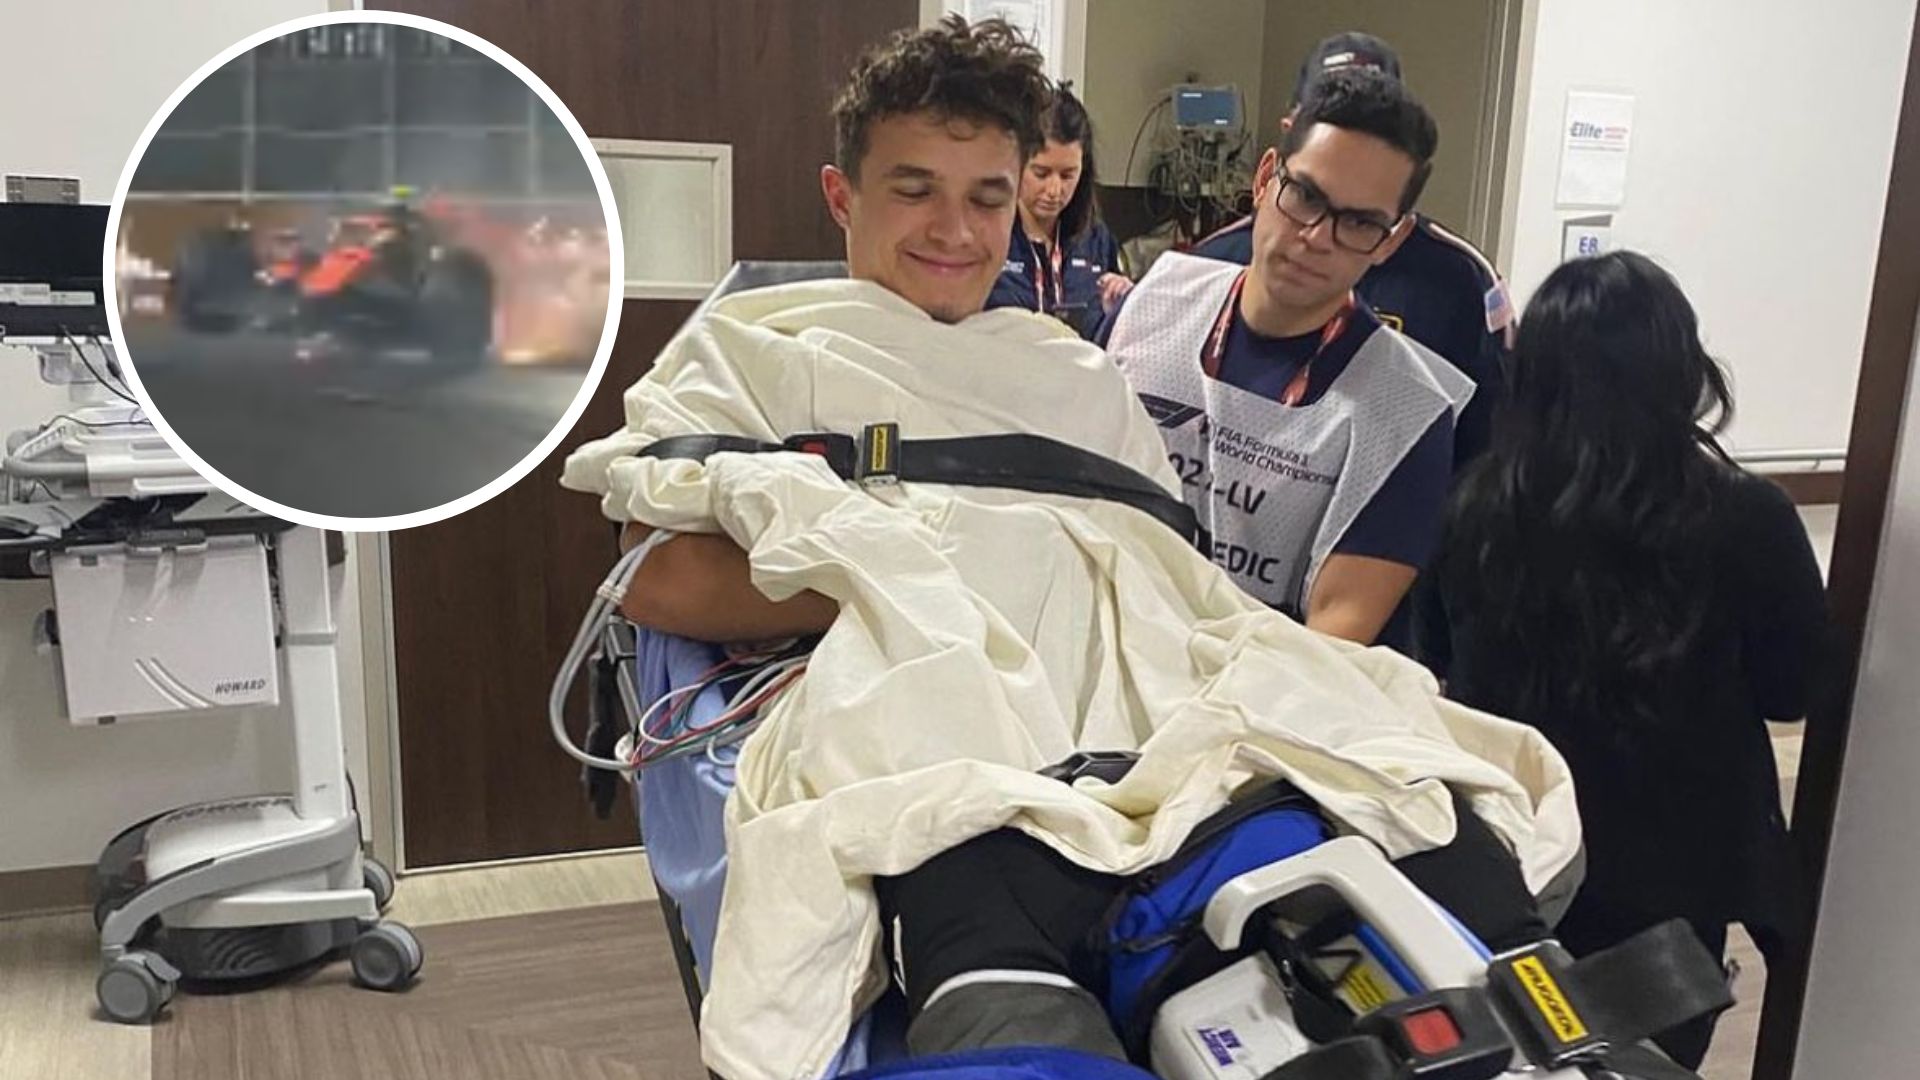 El piloto inglés, Lando Norris, al momento de ingresar al hospital tras su accidente en Las Vegas. (Foto Prensa Libre: Instagram)